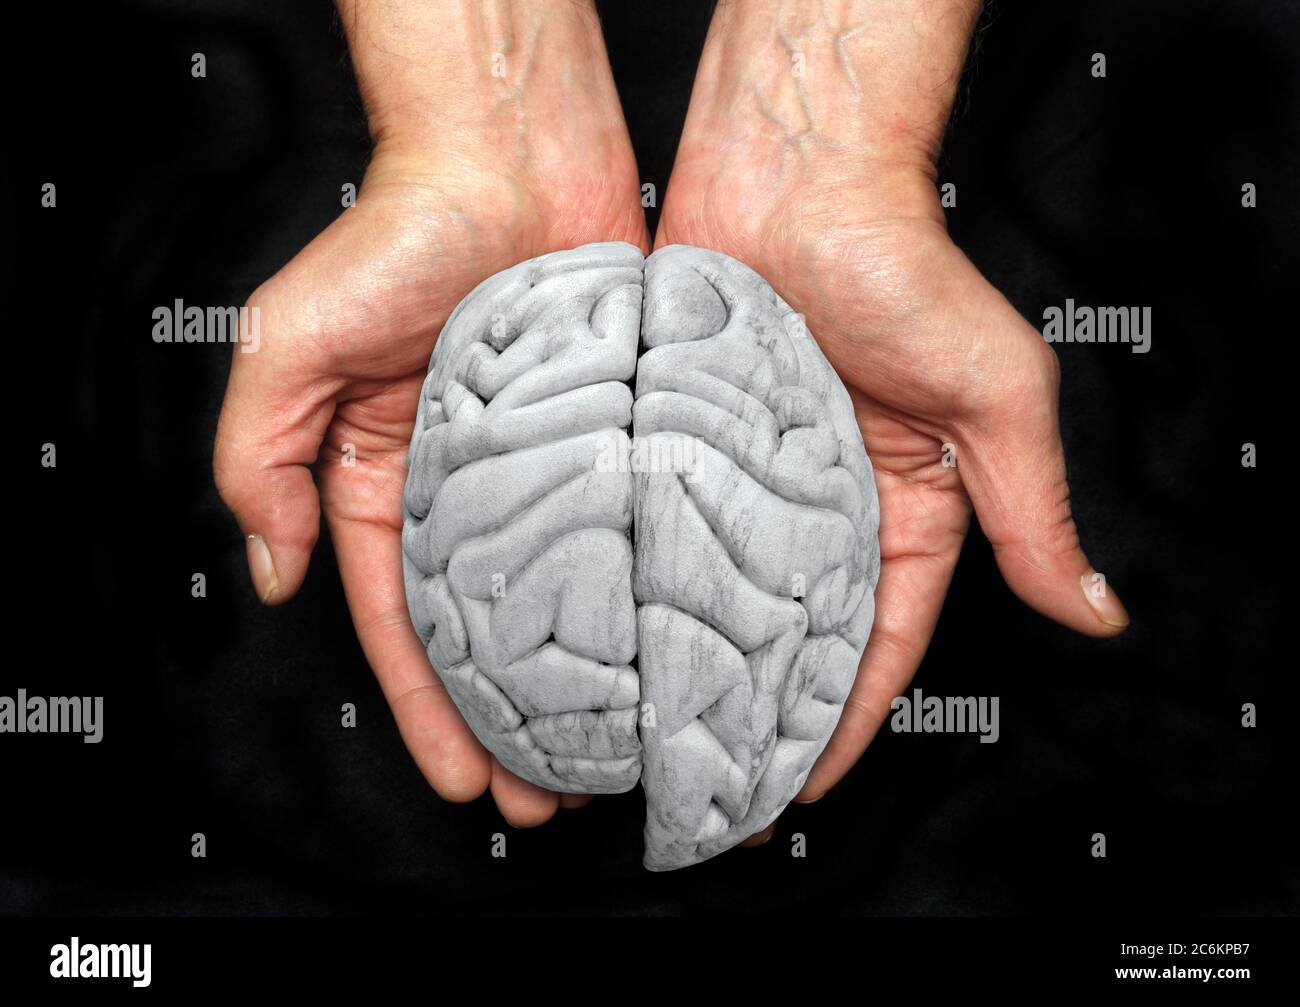 Vergrößerte linke Gehirnhälfte, konzeptuelles Bild. Dies könnte eine Hemimegalenzephalie (HME) darstellen, eine seltene neurologische Erkrankung, bei der eine Seite des Gehirns ungewöhnlich größer als die andere ist. Es könnte auch darstellen, eine Seite des Gehirns mehr als die zu verwenden. Stockfoto